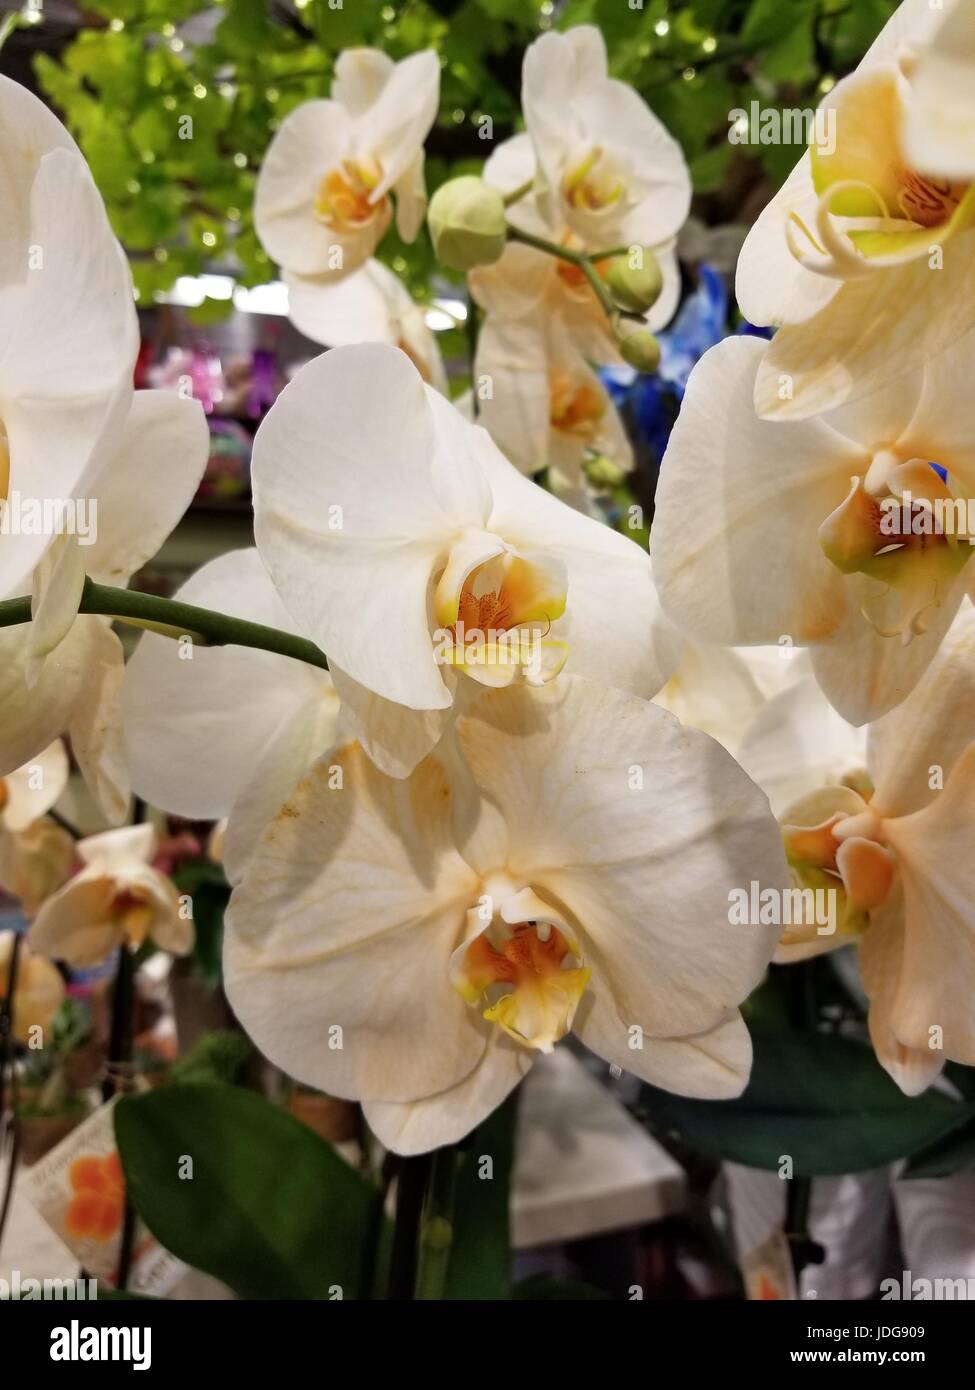 Foto von schönen unbeschnittenen weißen Orchideen in einer natürlichen Umgebung, bringen die Vielfalt der weißen Farben, die die Klammer dieser Blume geworden sind. Stockfoto